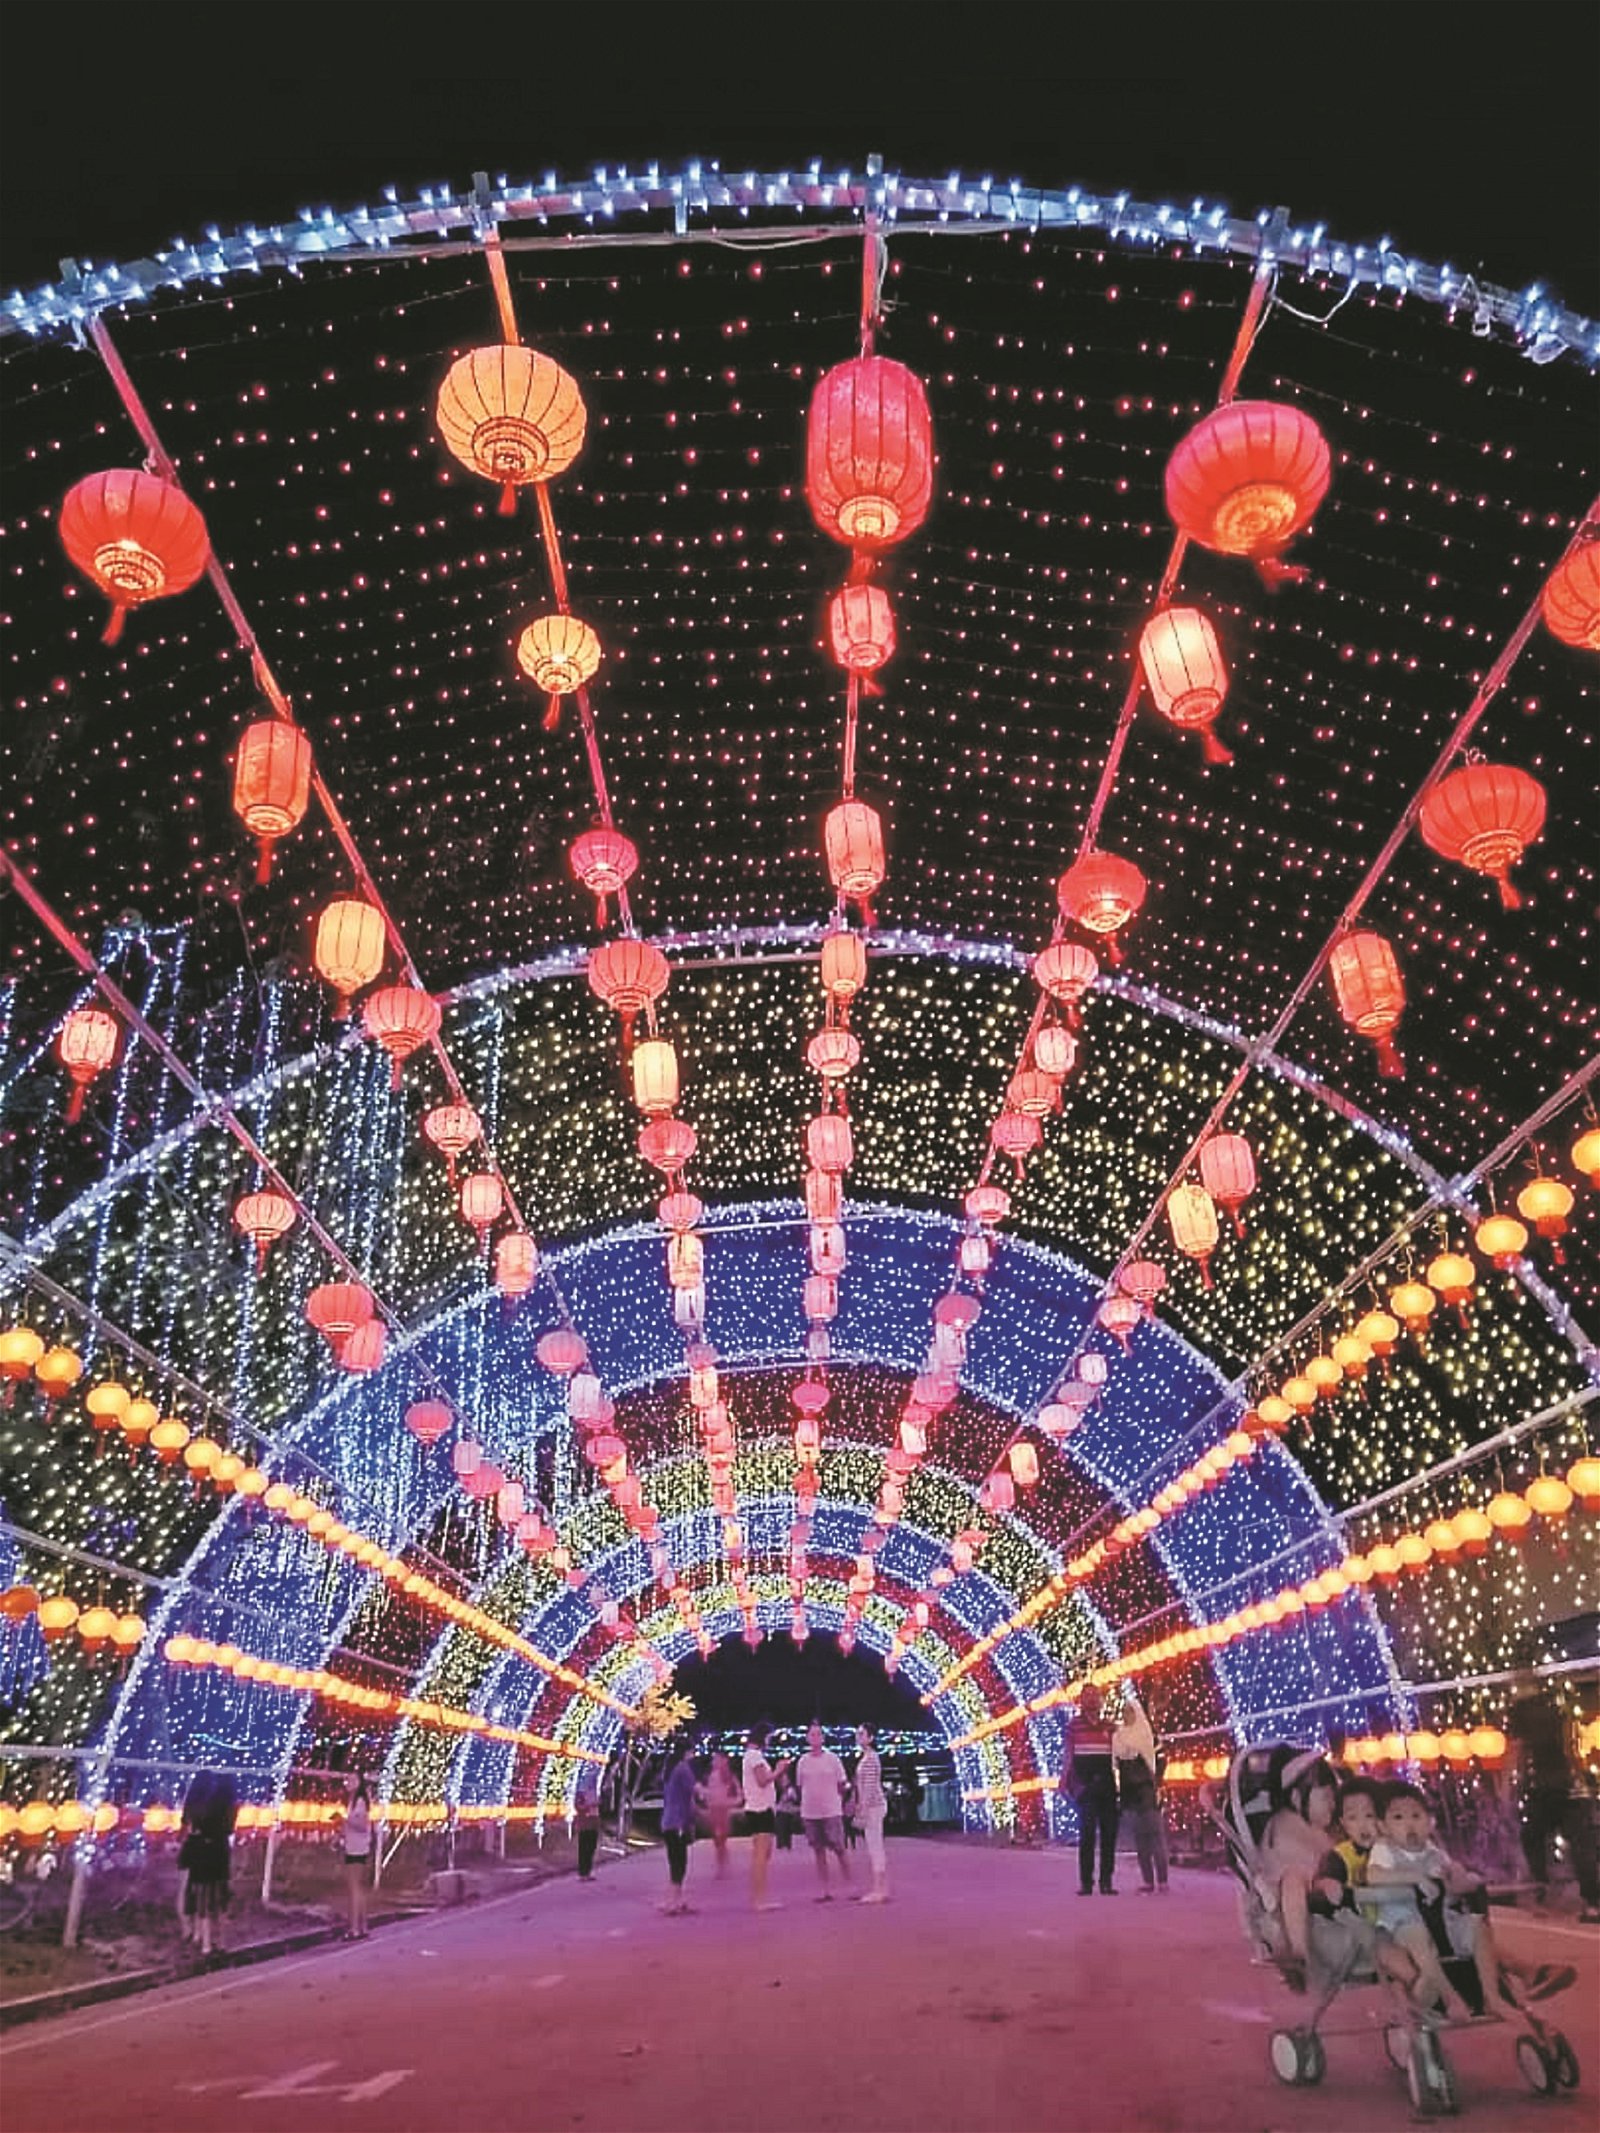 180尺长的灯饰隧道是利民达新春灯饰展的焦点之一。